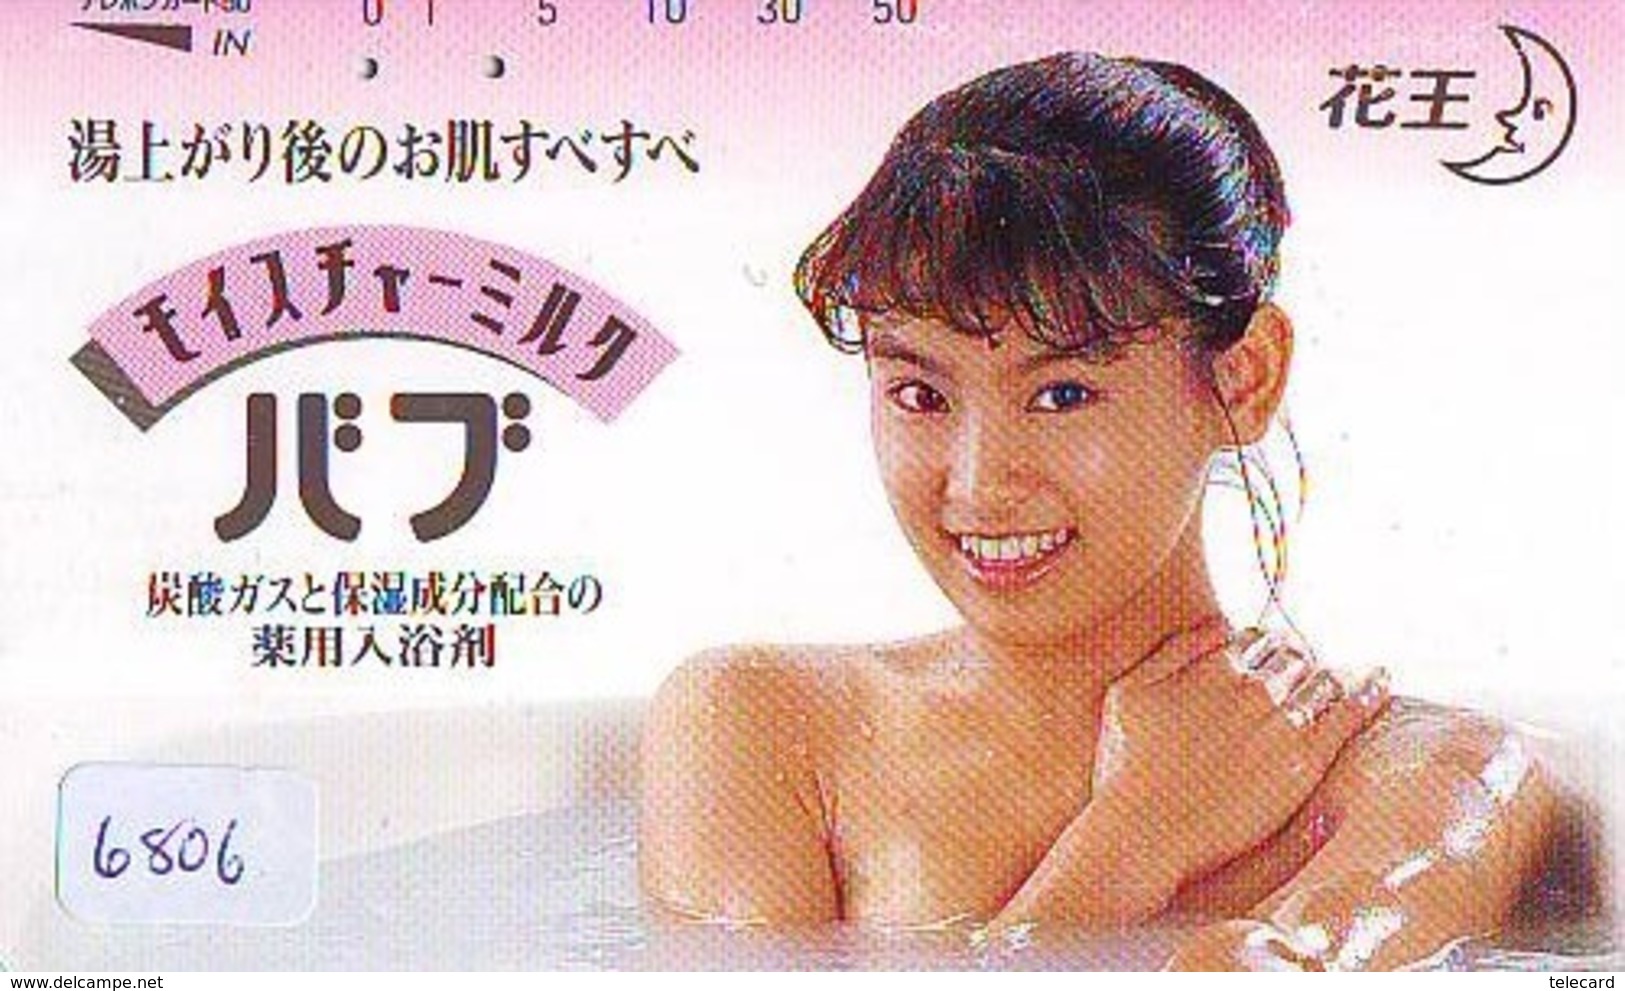 Télécarte Japon * EROTIQUE (6806) DANS LA BAIN *  EROTIC PHONECARD JAPAN * TK * BATHCLOTHES * FEMME SEXY LADY LINGERIE - Mode